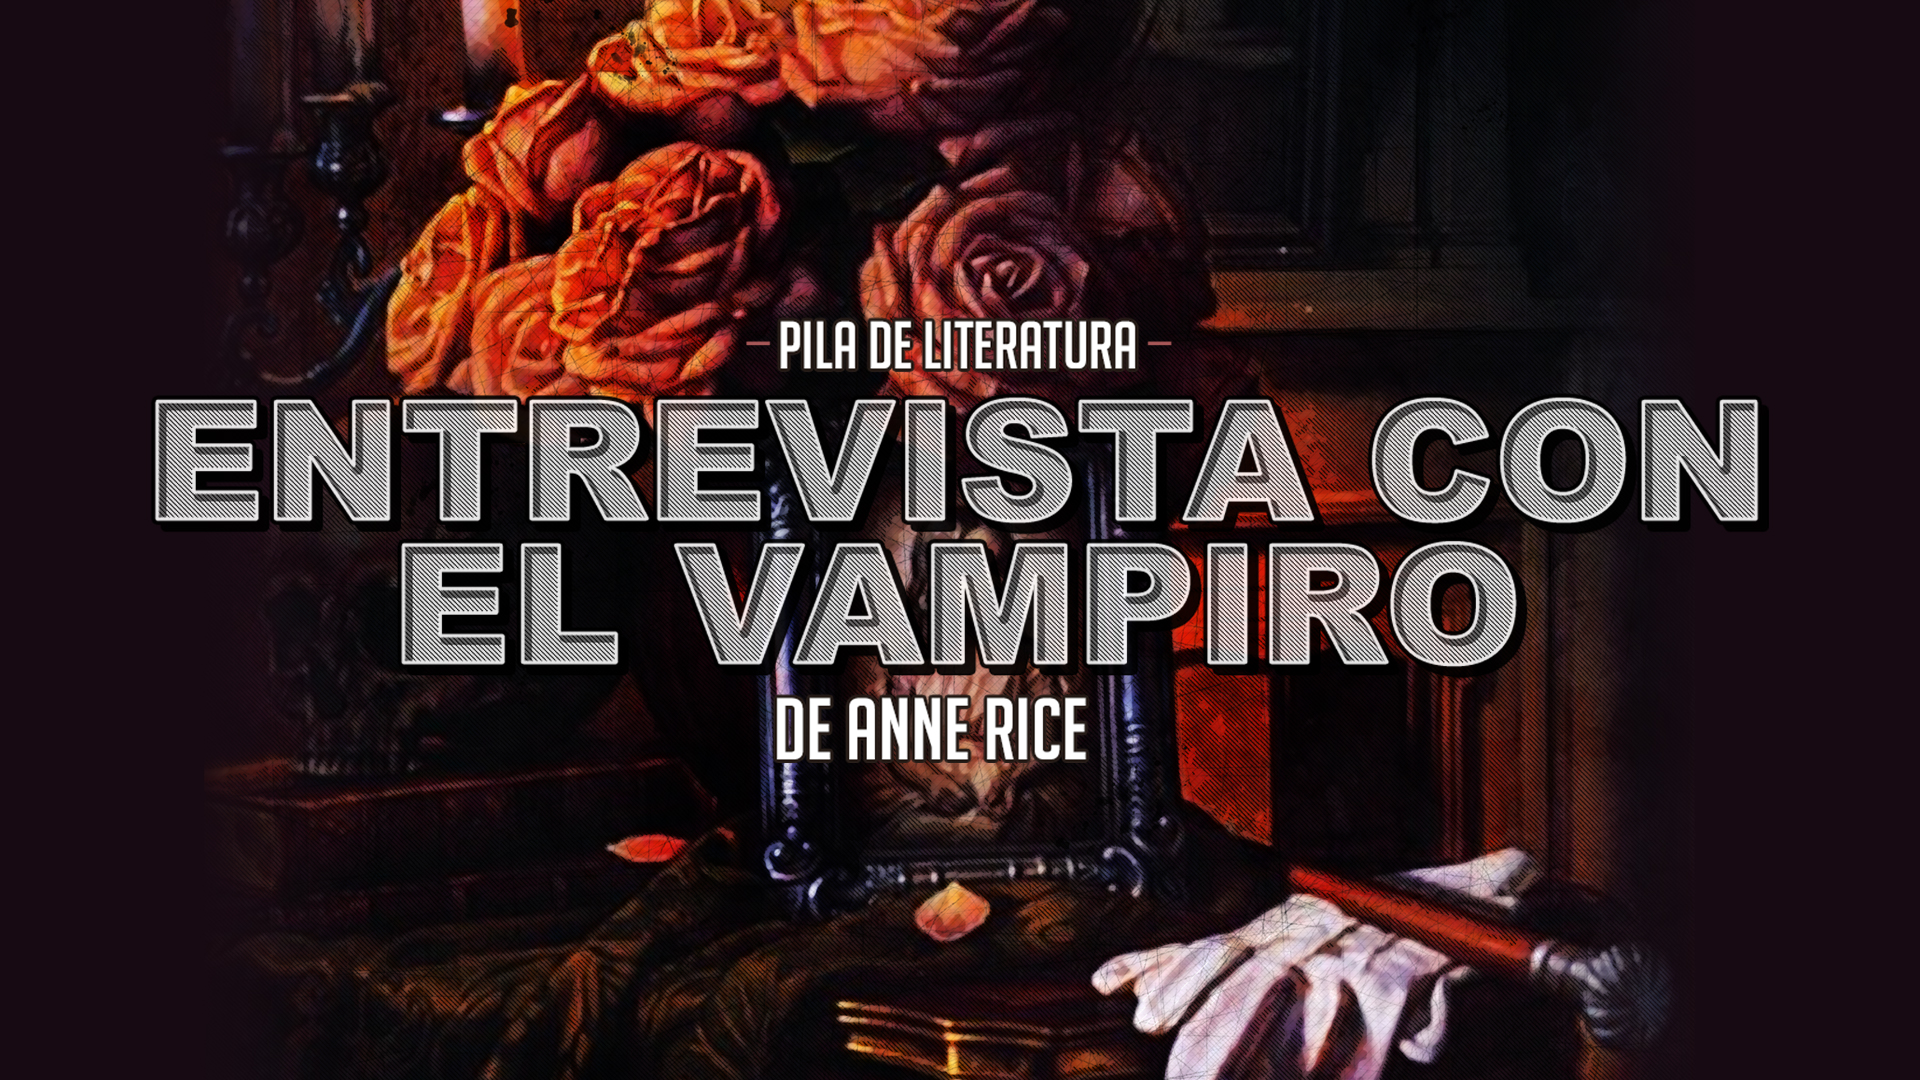 Pila de Literatura – Entrevista con el vampiro de Anne Rice con Ale Morando